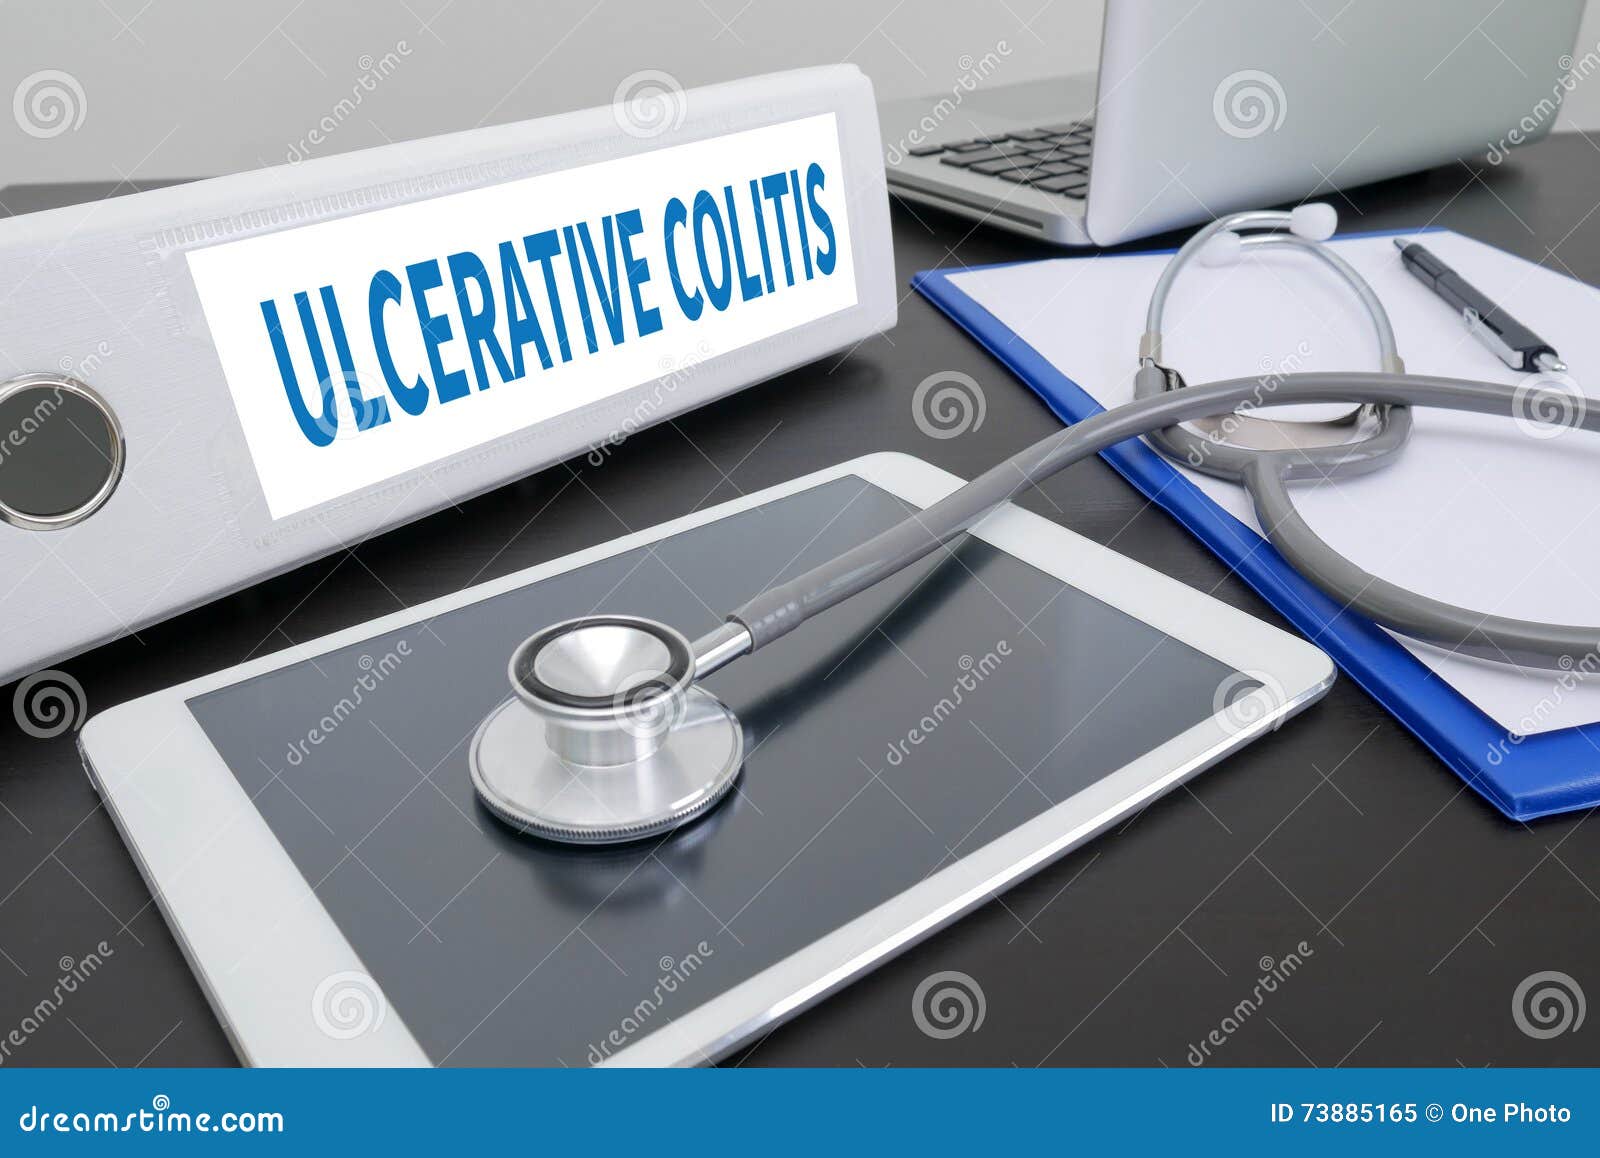 ulcerative colitis